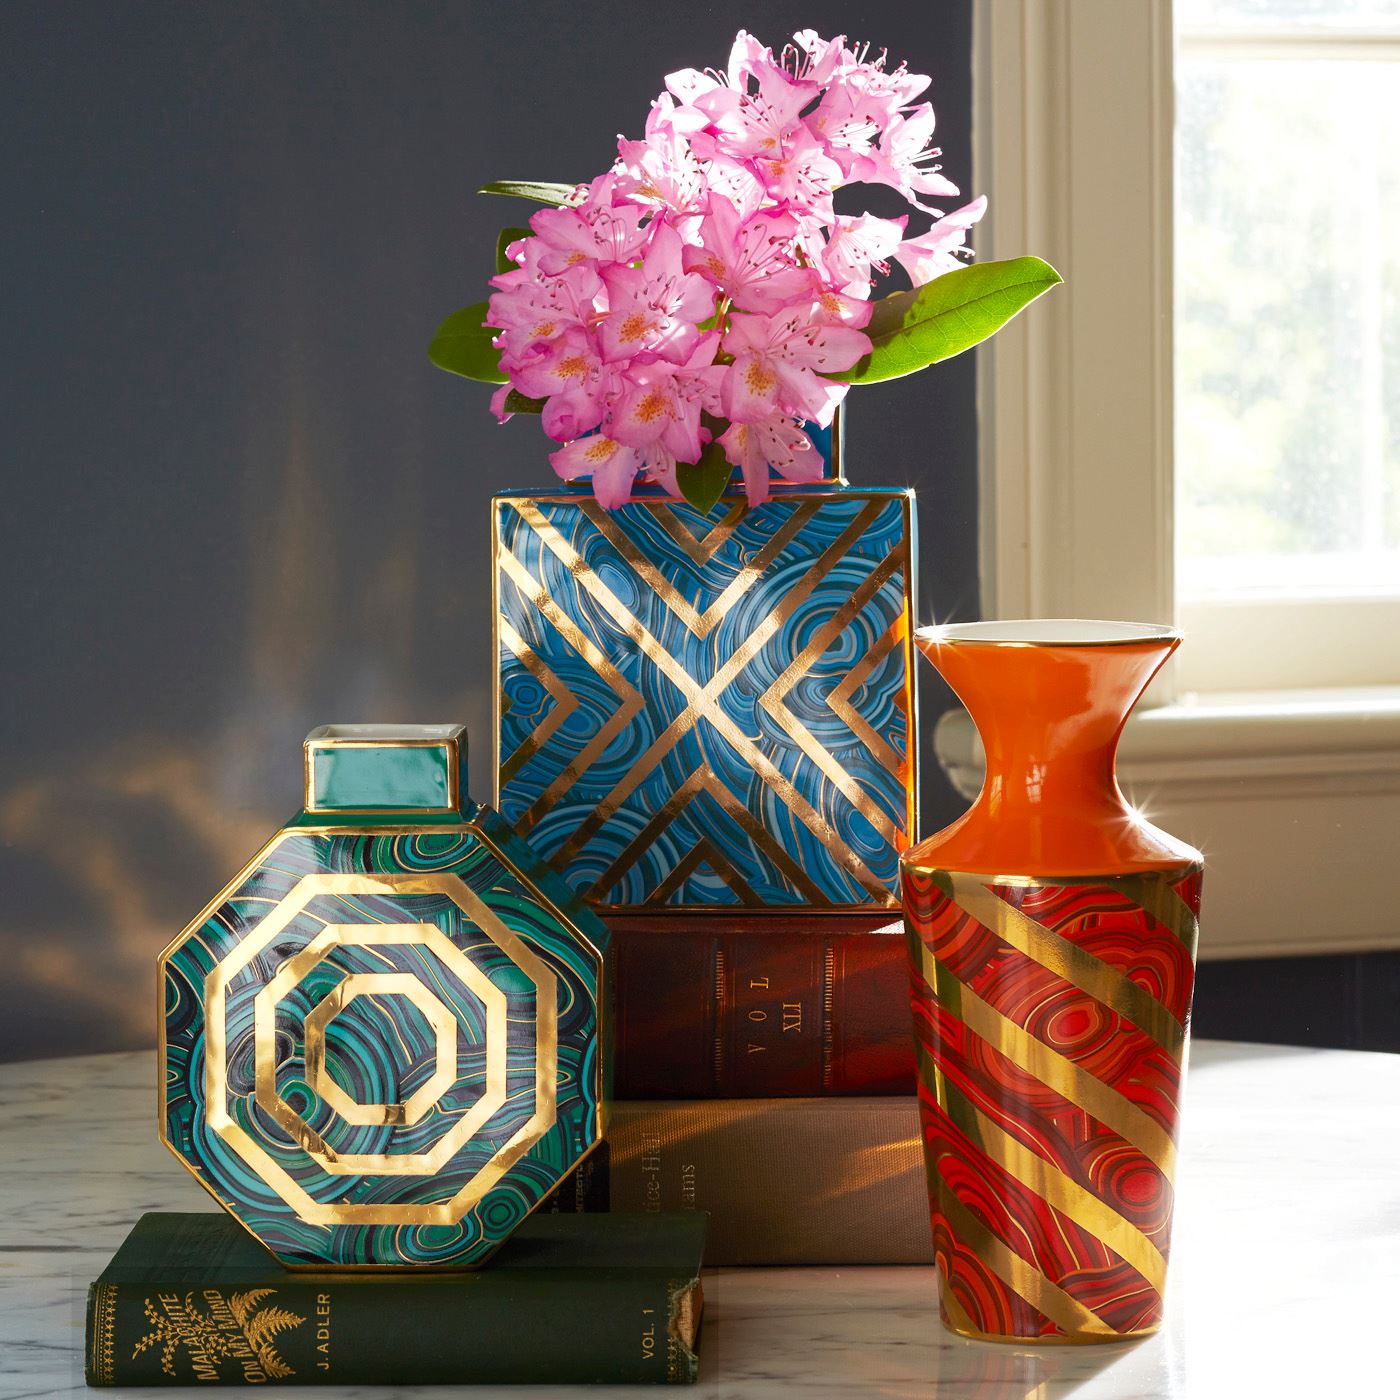 Deco-style vases from Jonathan Adler